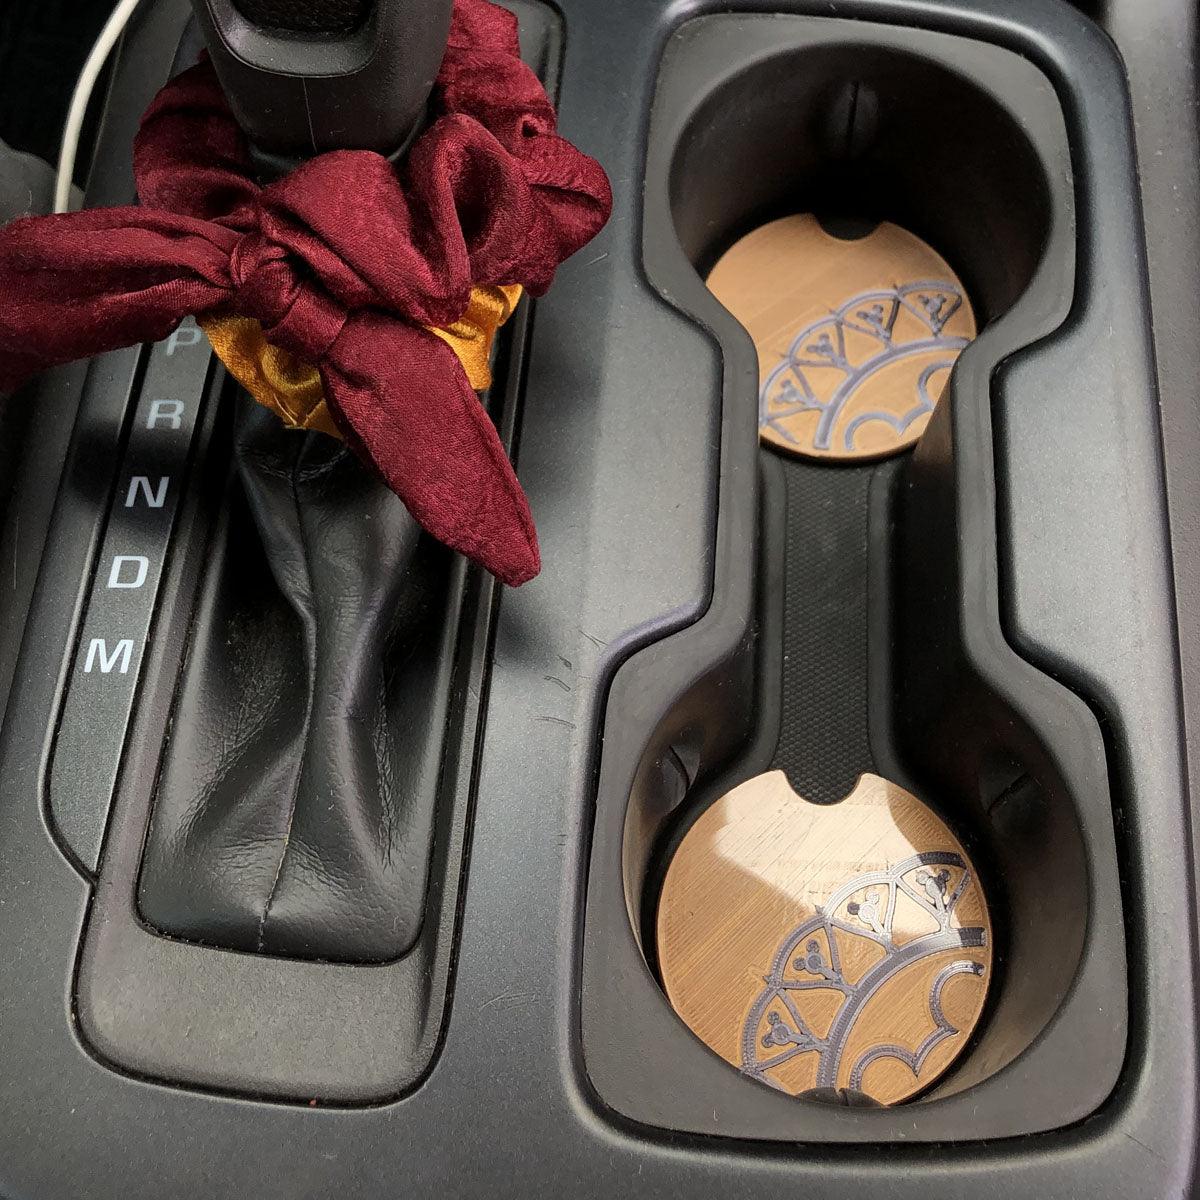 BoHo Car Coasters - Set of 2 - CLEARANCE